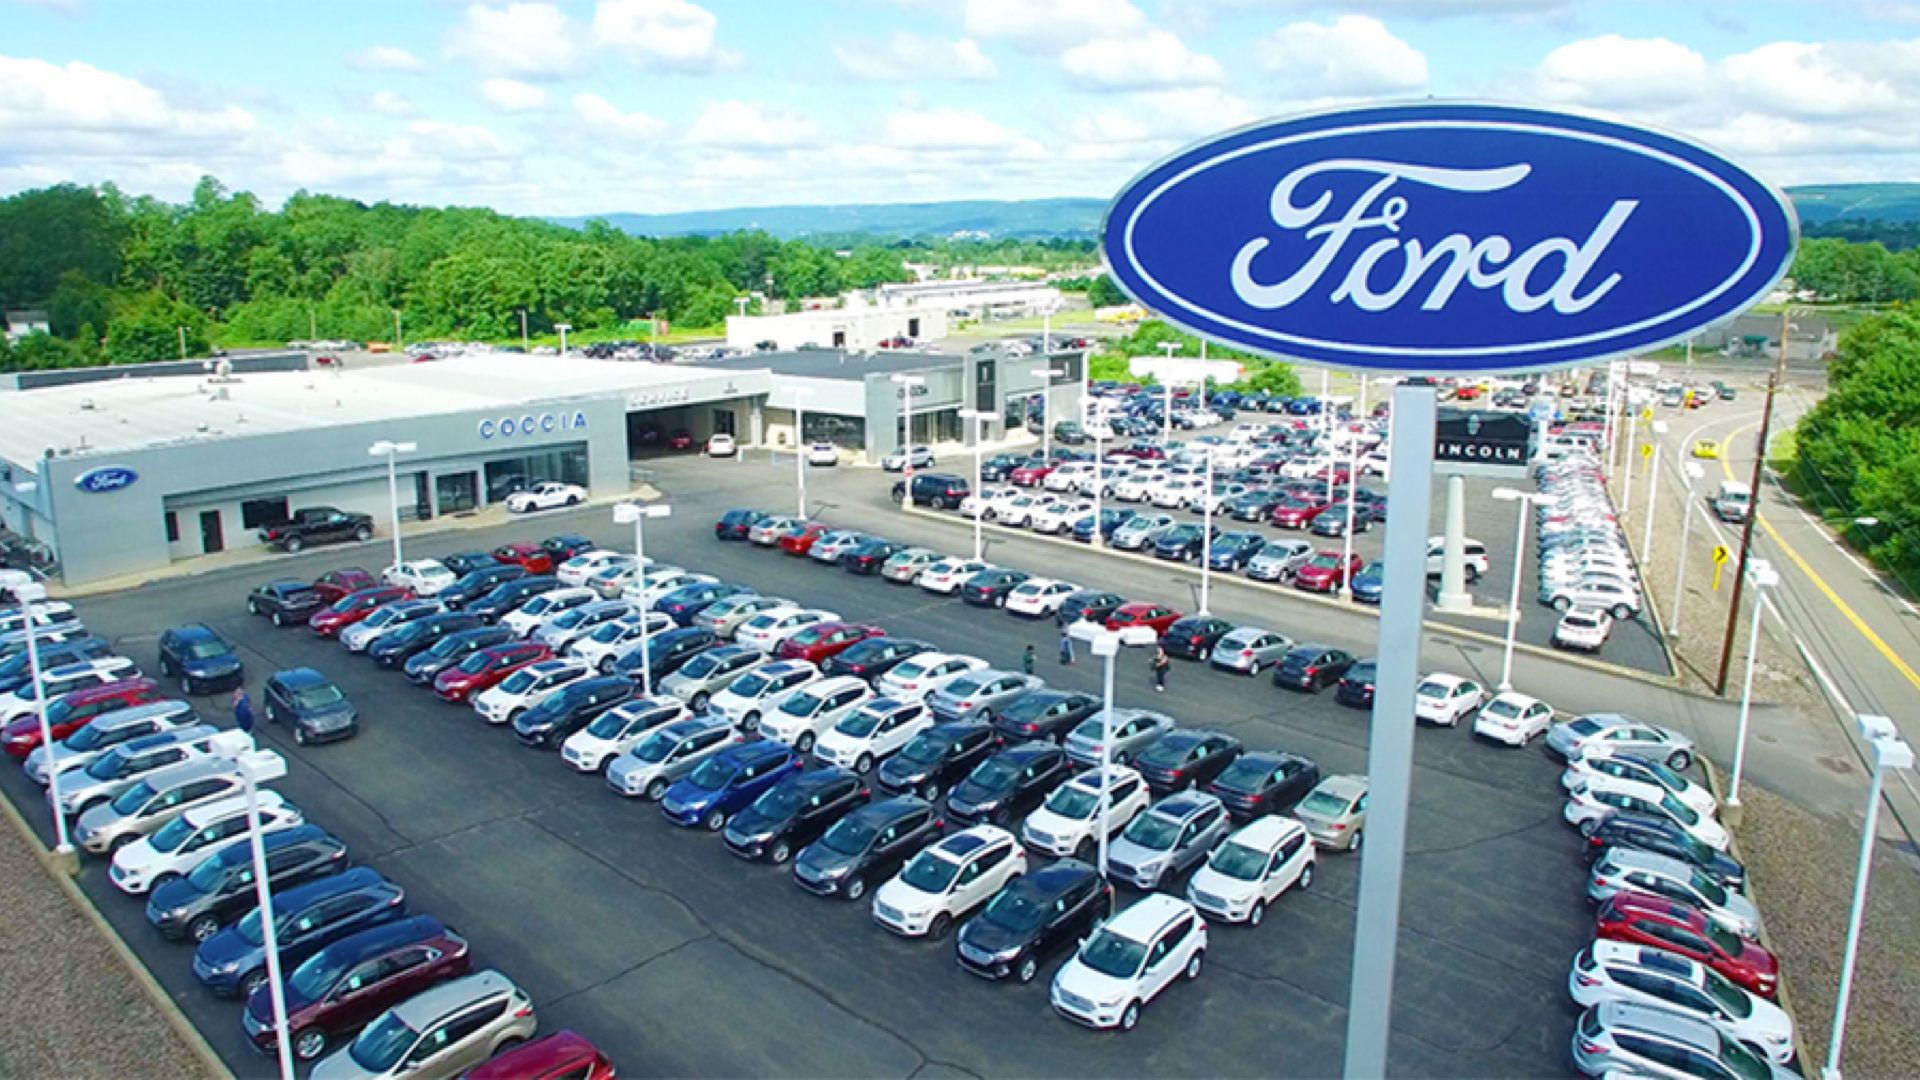 Ford car dealership